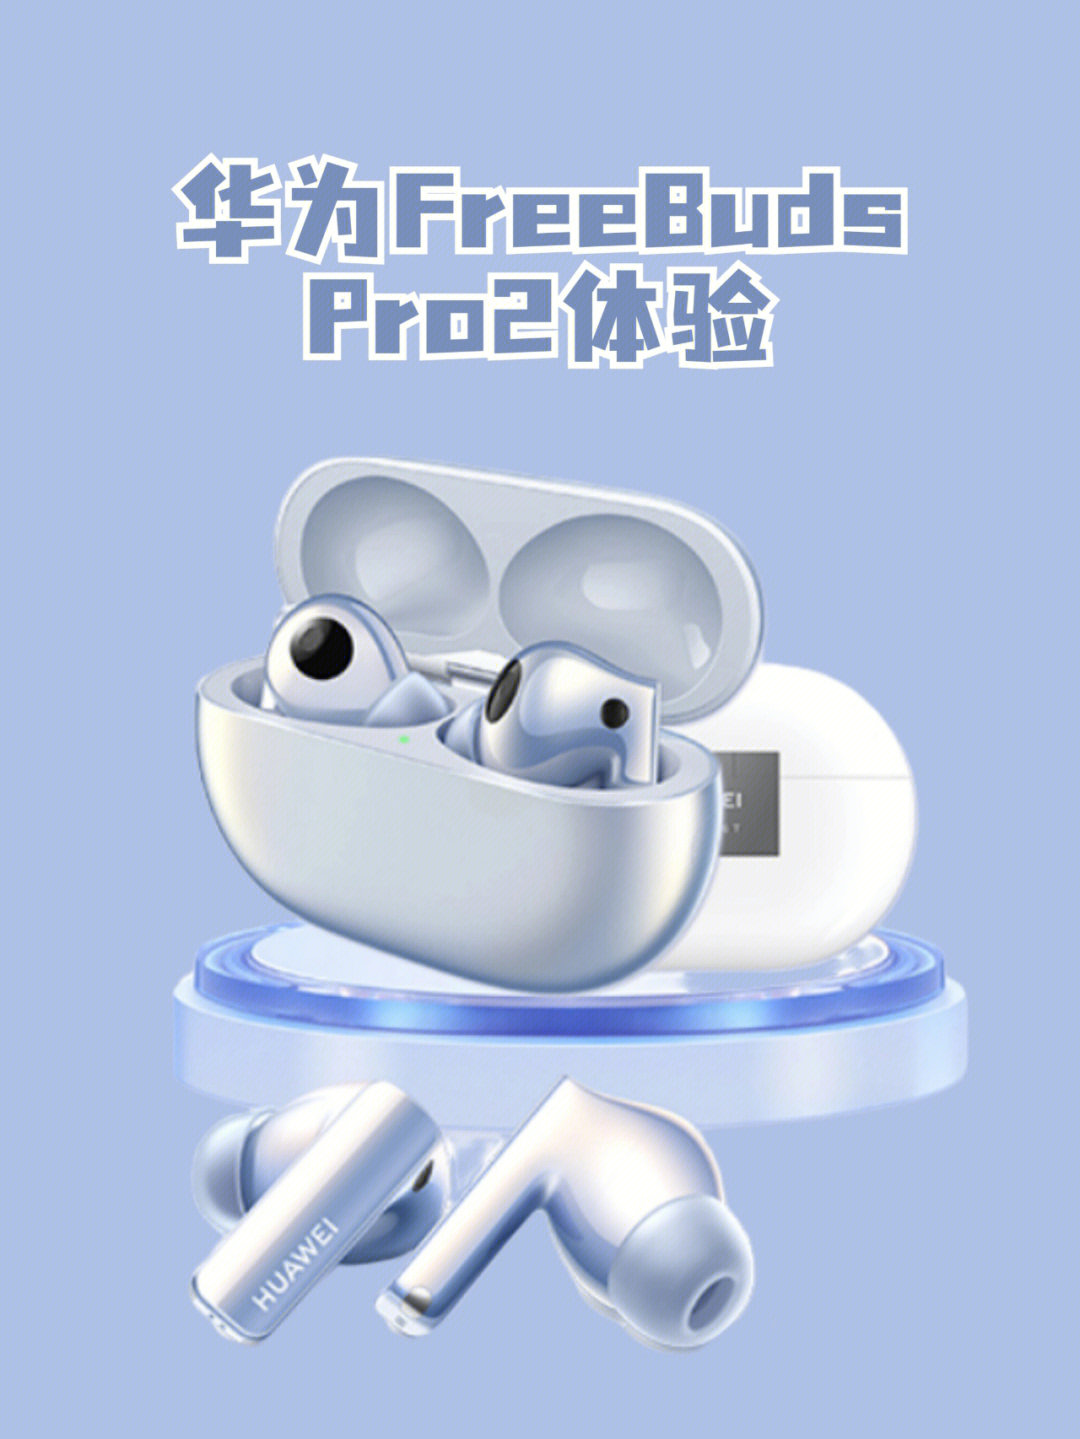 今日到手:华为freebuds pro2耳机使用体验